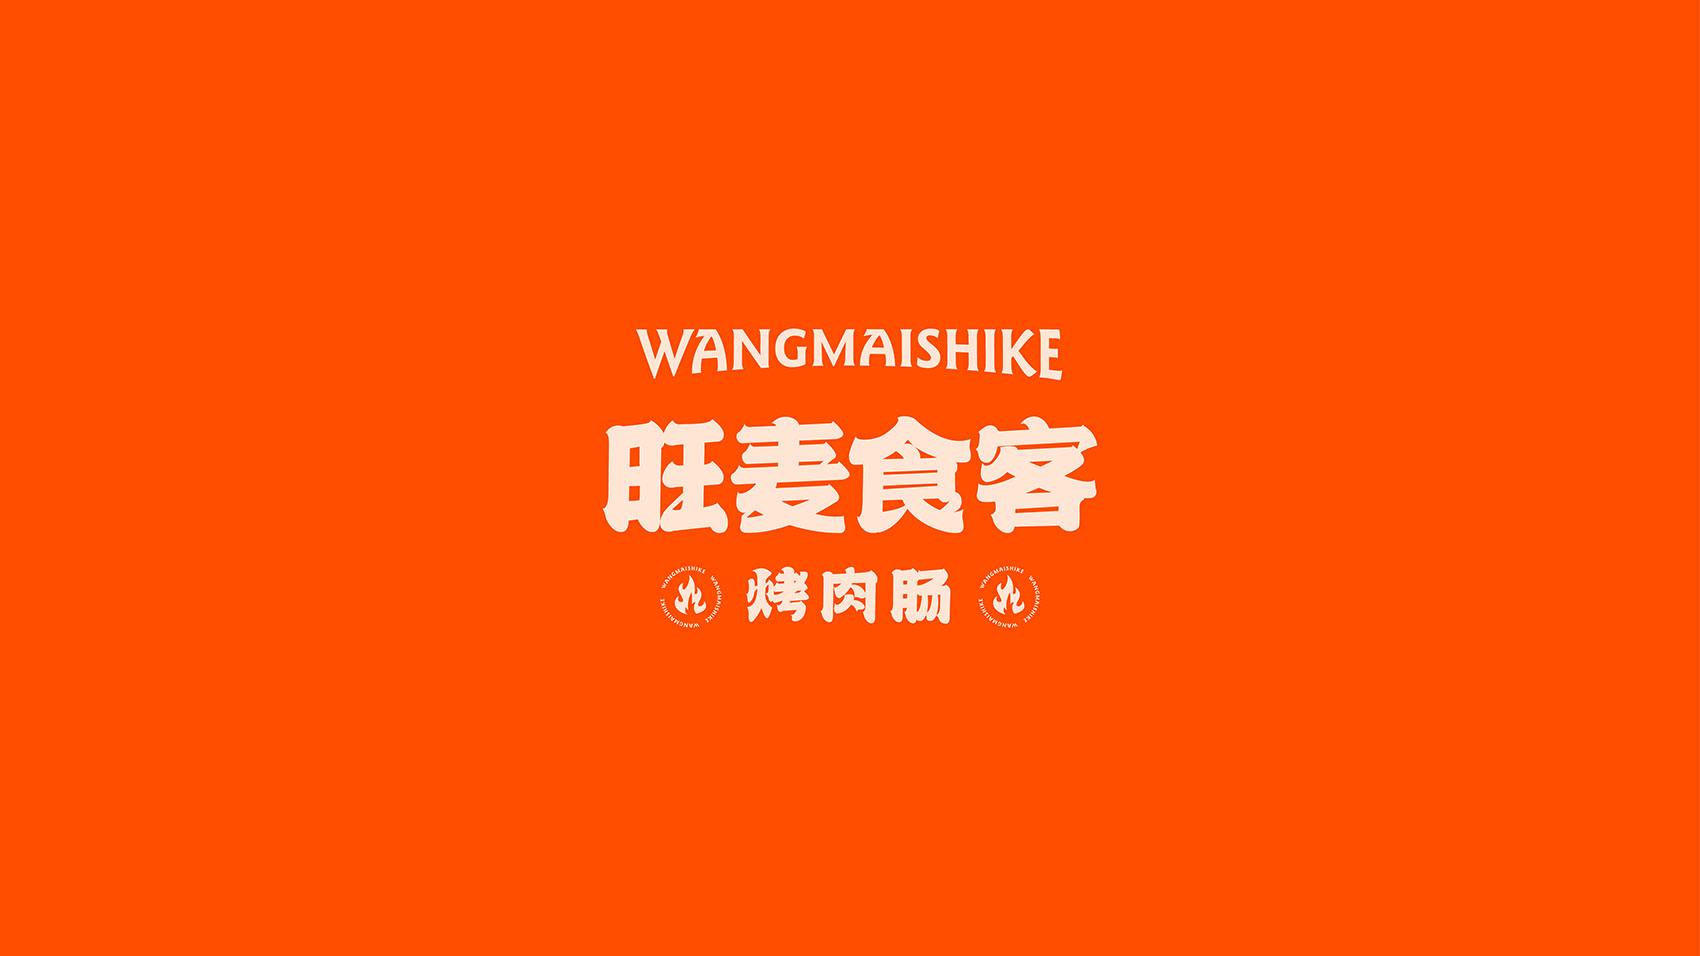 旺麦食客烤肉肠品牌VI设计 上海VI设计 企业logo设计 上海logo设计 宿迁logo设计 餐饮logo设计